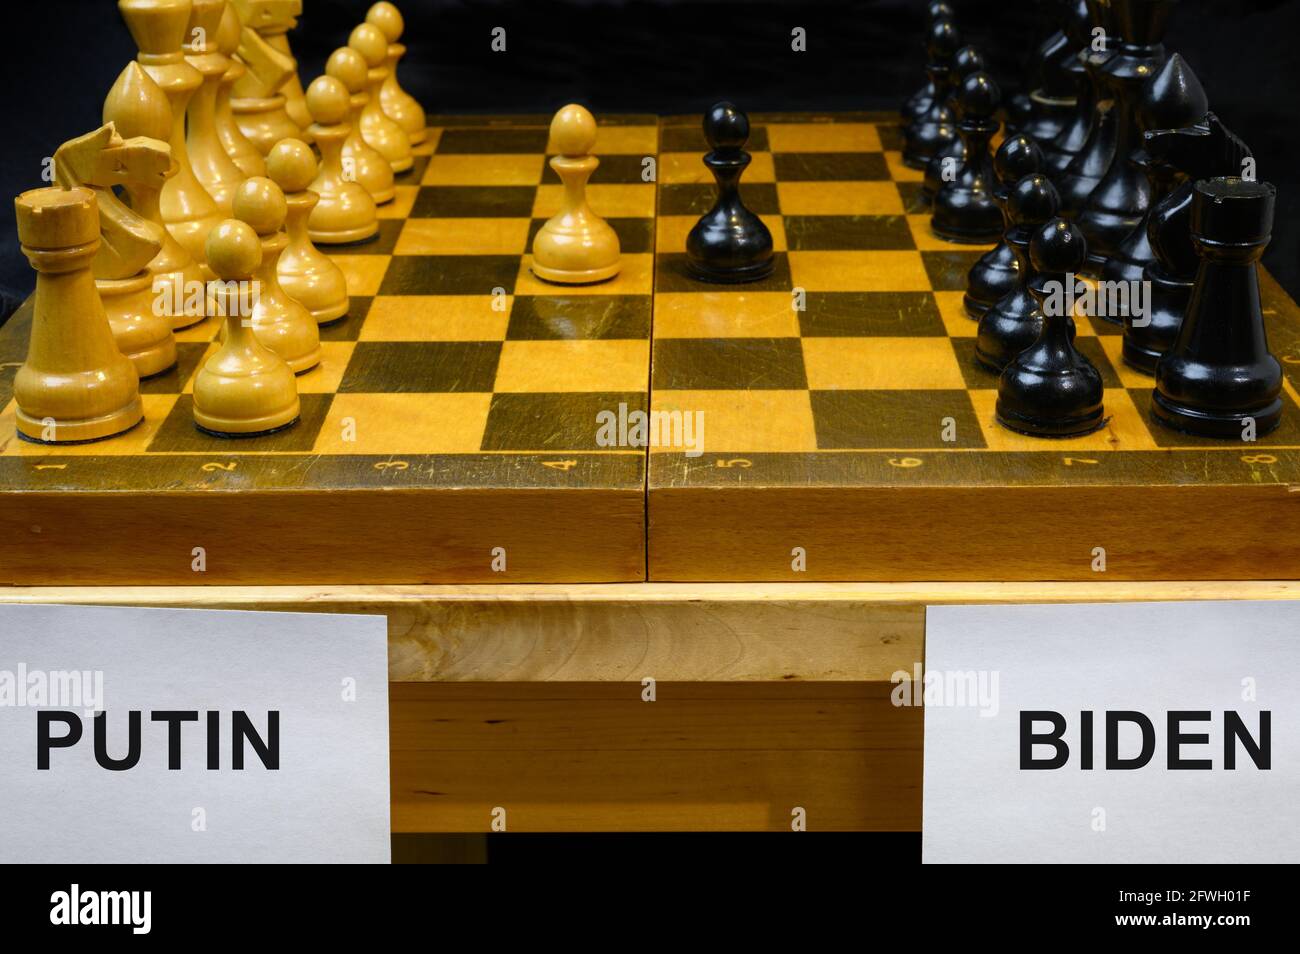 Russia vs USA, scacchi come gioco geopolitico. I nomi Putin e Biden per scacchiera. Concetto di vertice riunione, tensione politica, guerra economica, sancti Foto Stock